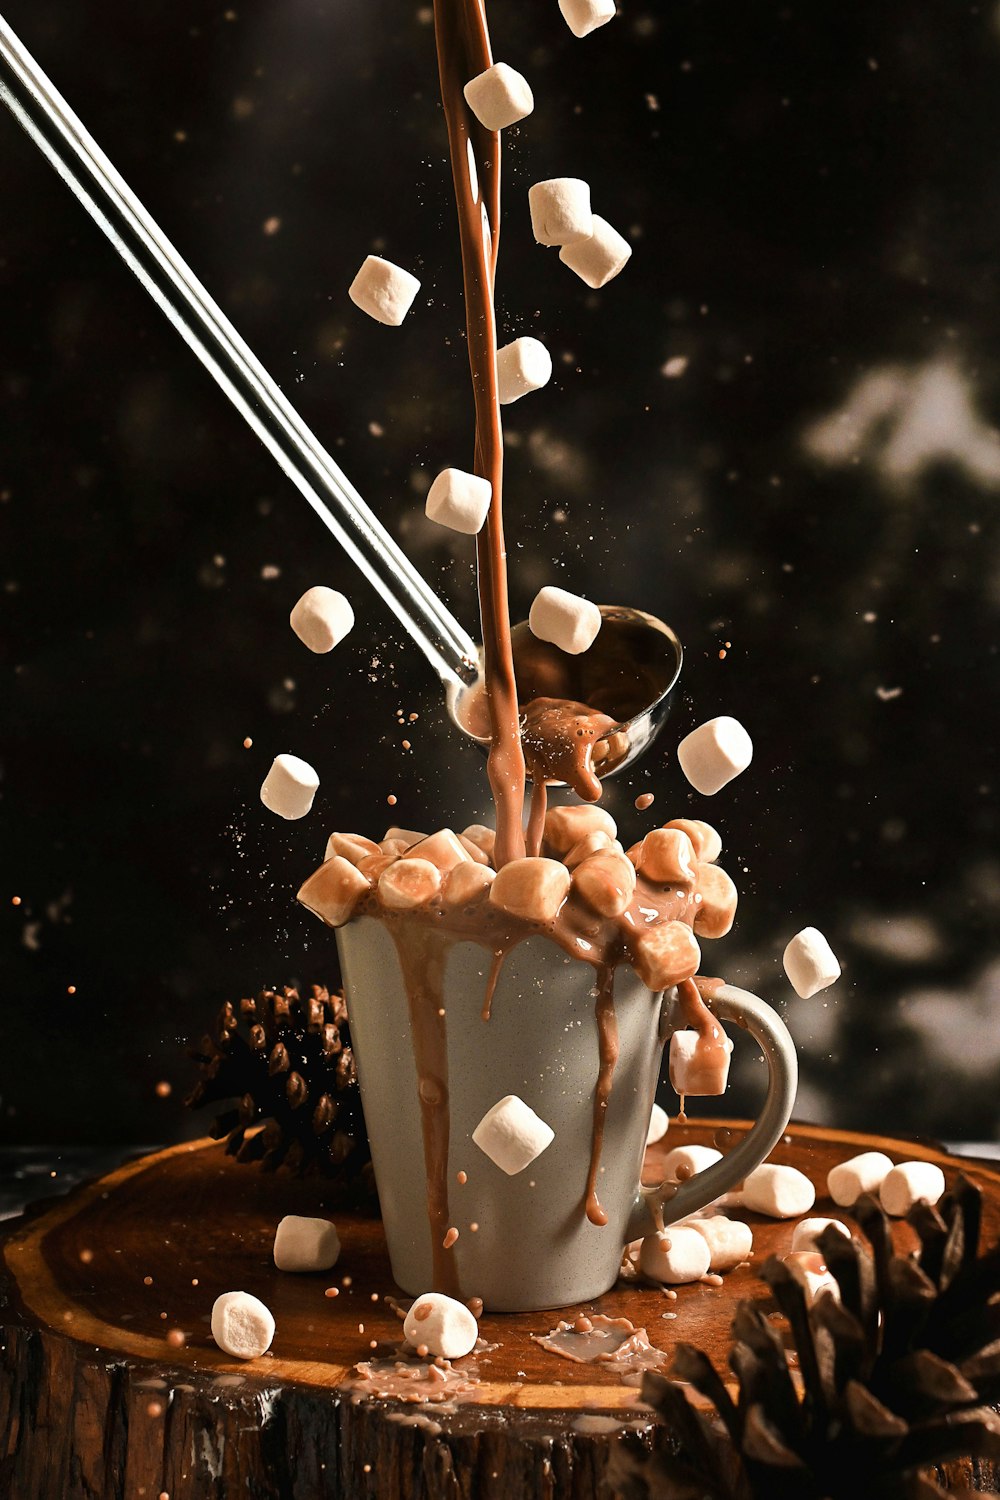 eine Tasse heiße Schokolade, in die Marshmallows fallen